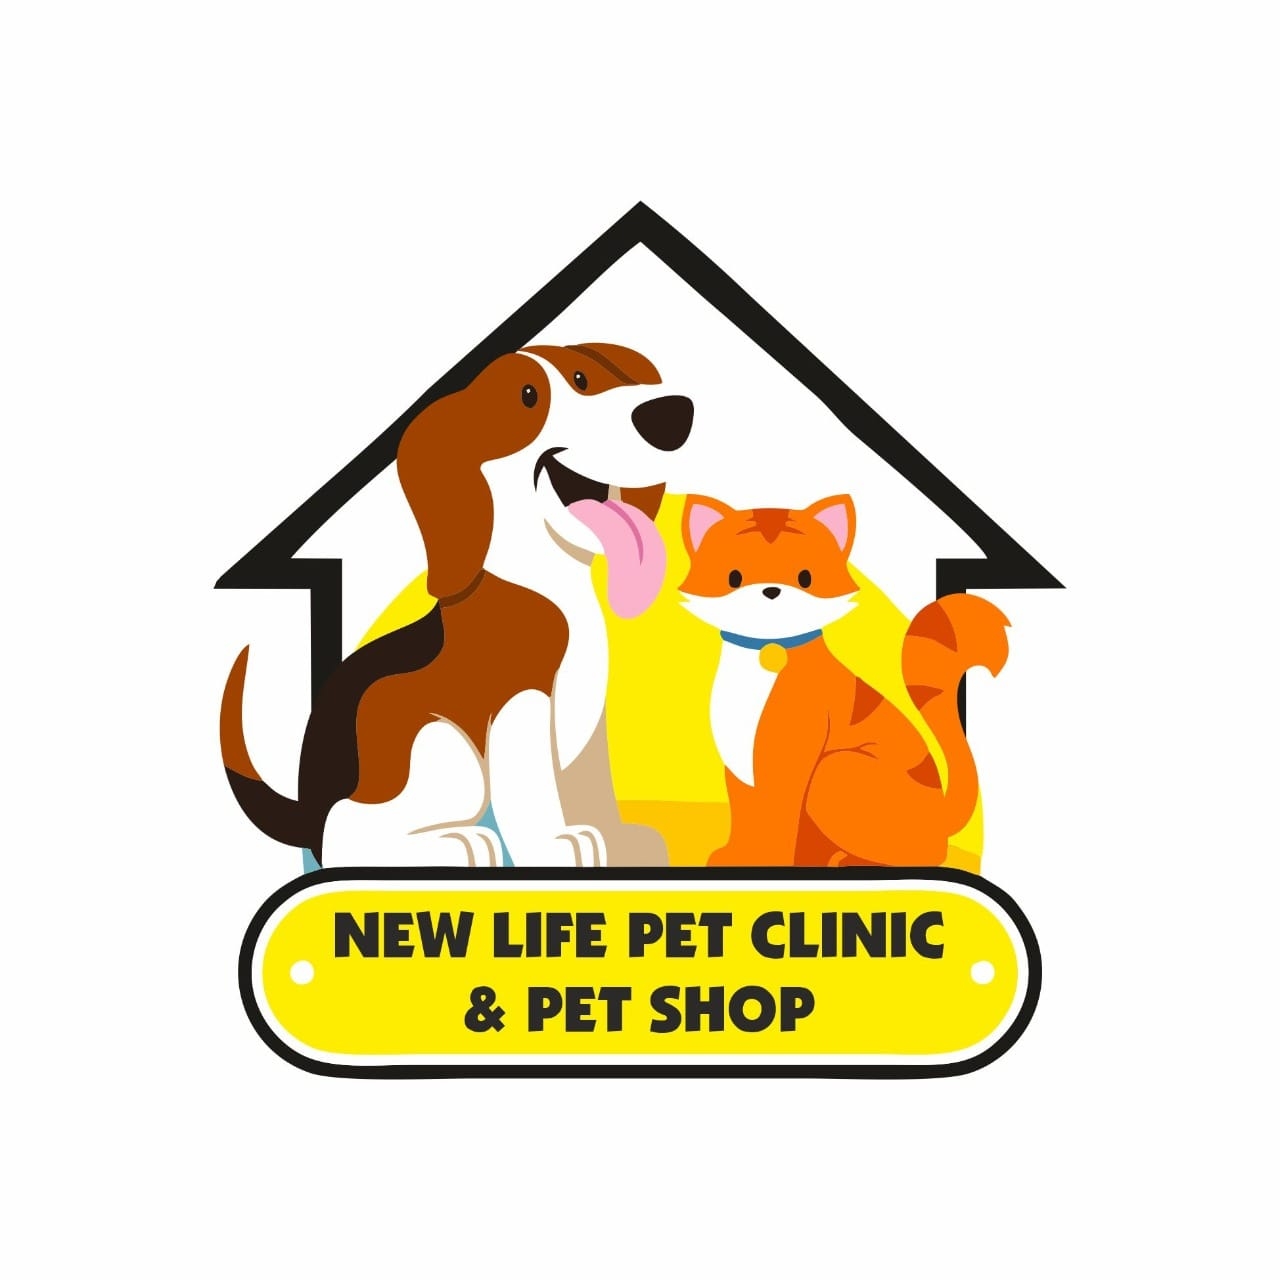 New life pet clinic & pet shop Logo